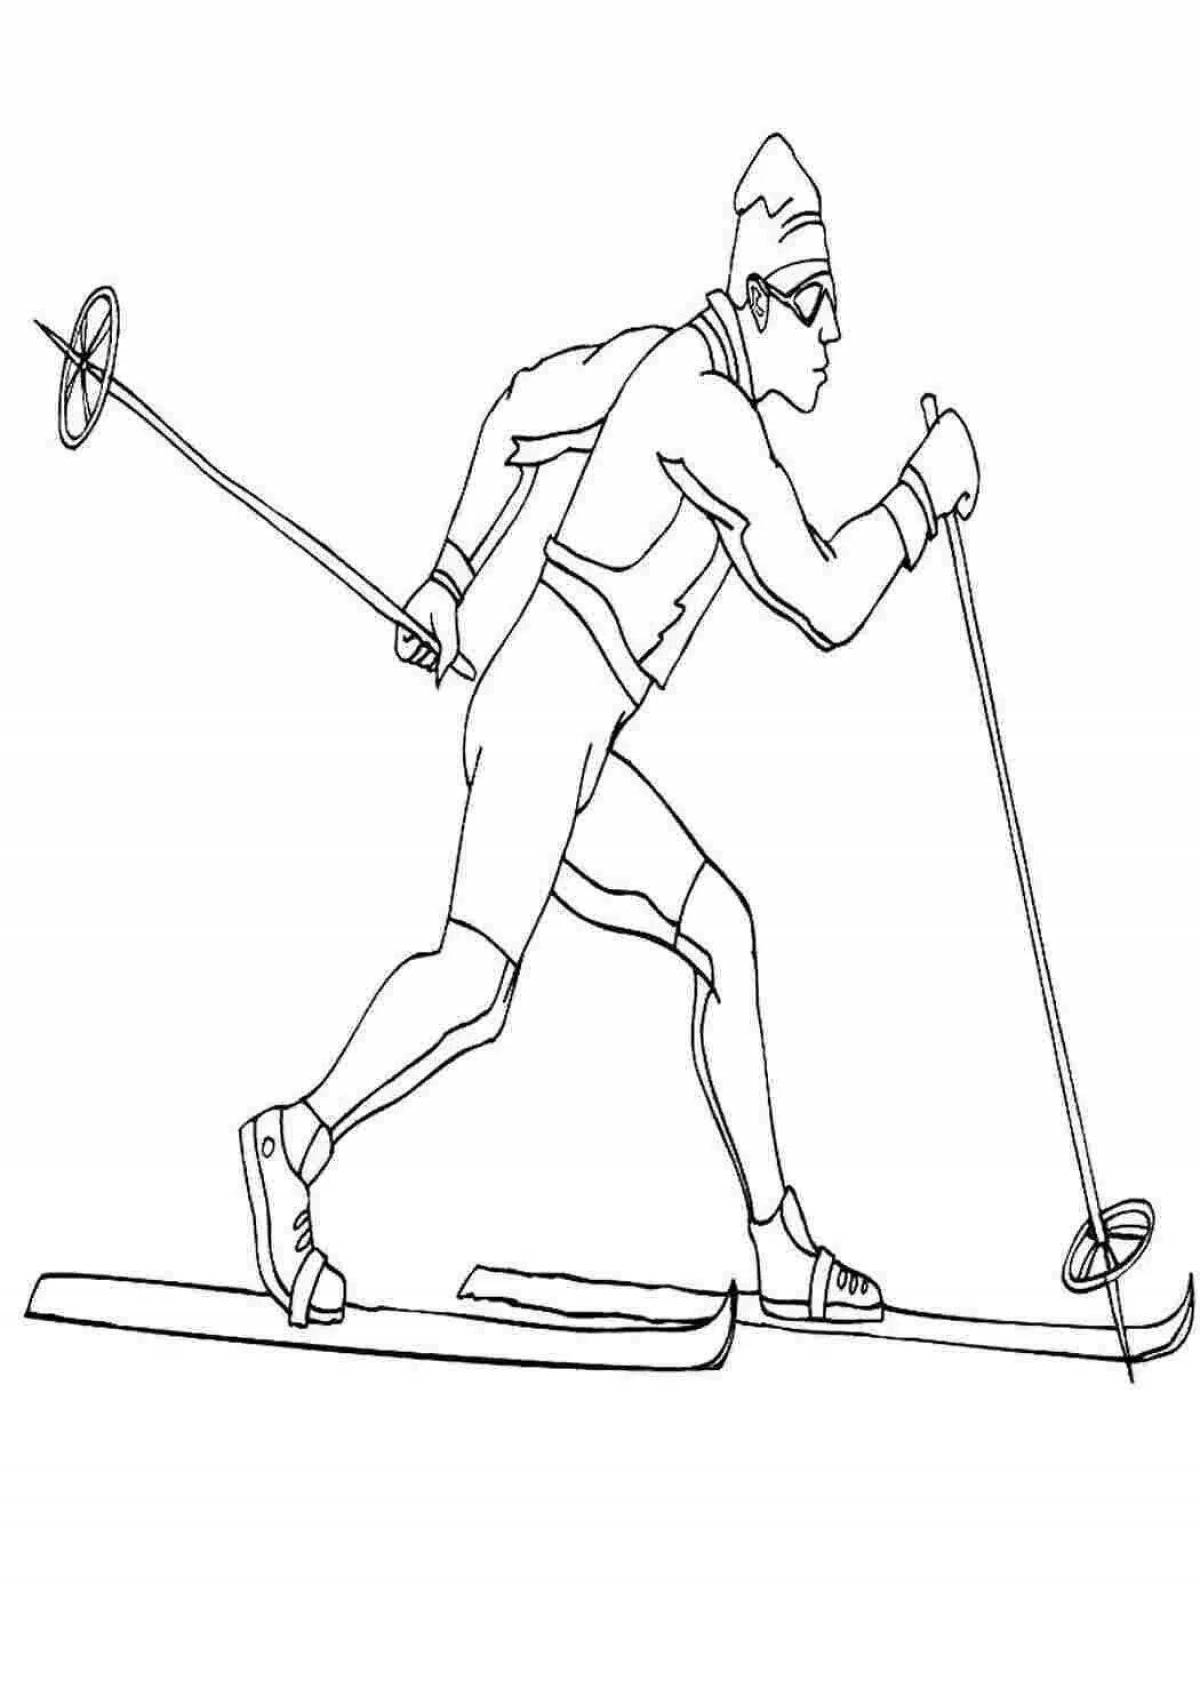 Калейдоскопический человек на лыжах